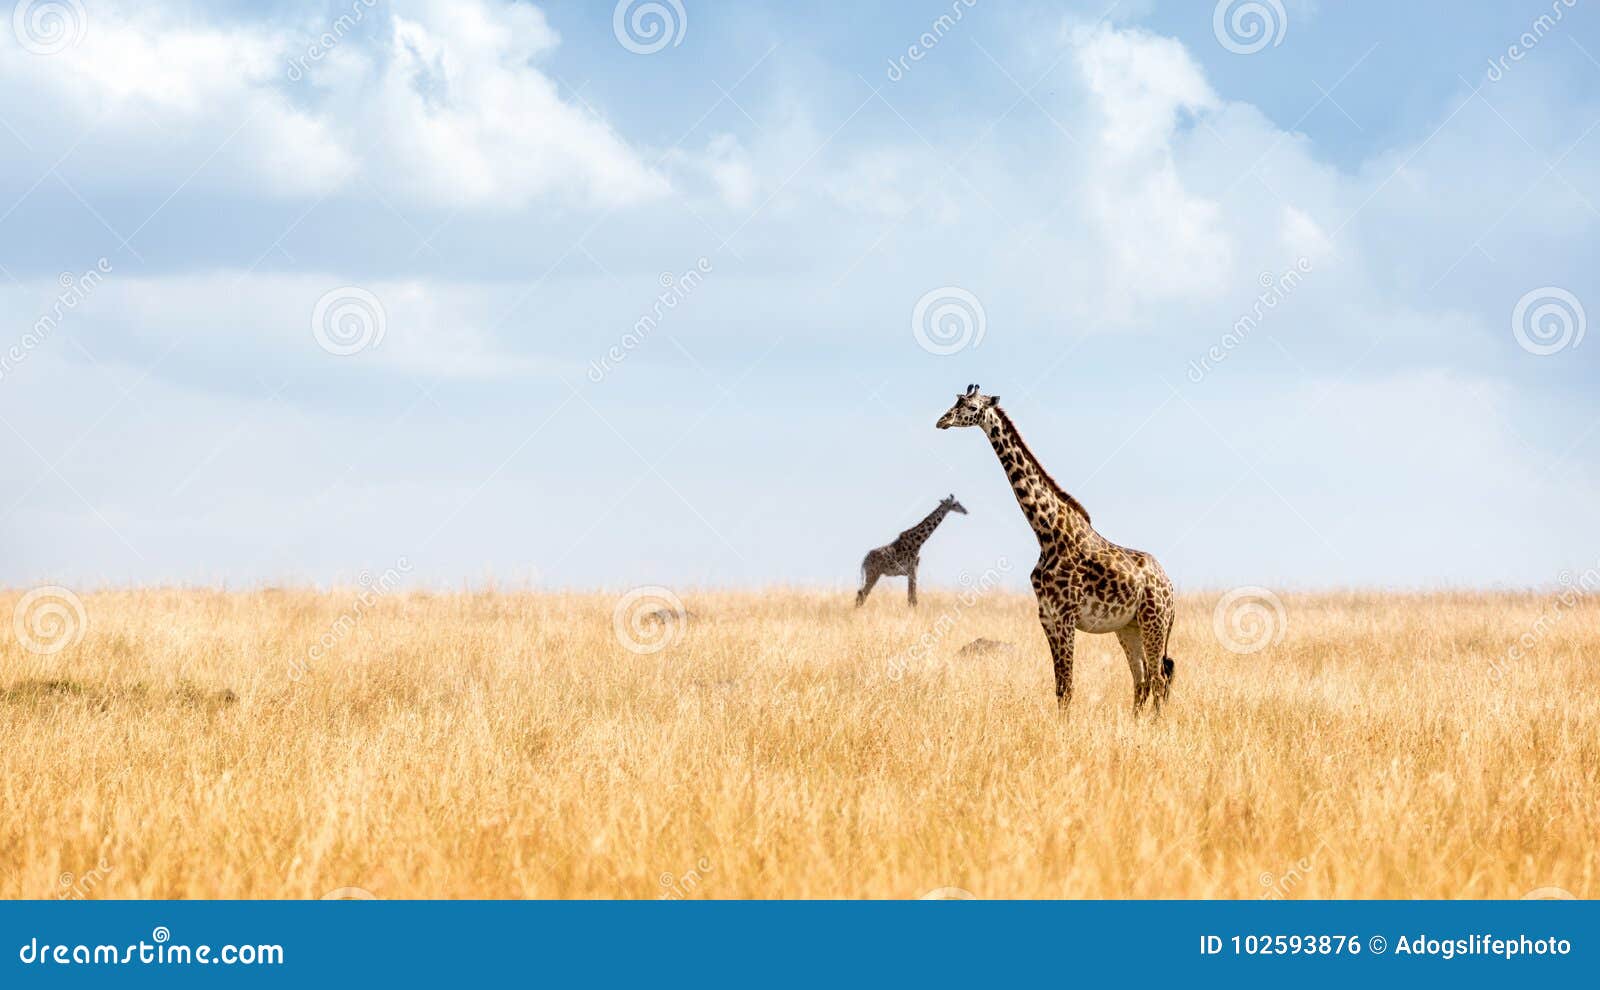 masai giraffe in kenya plains